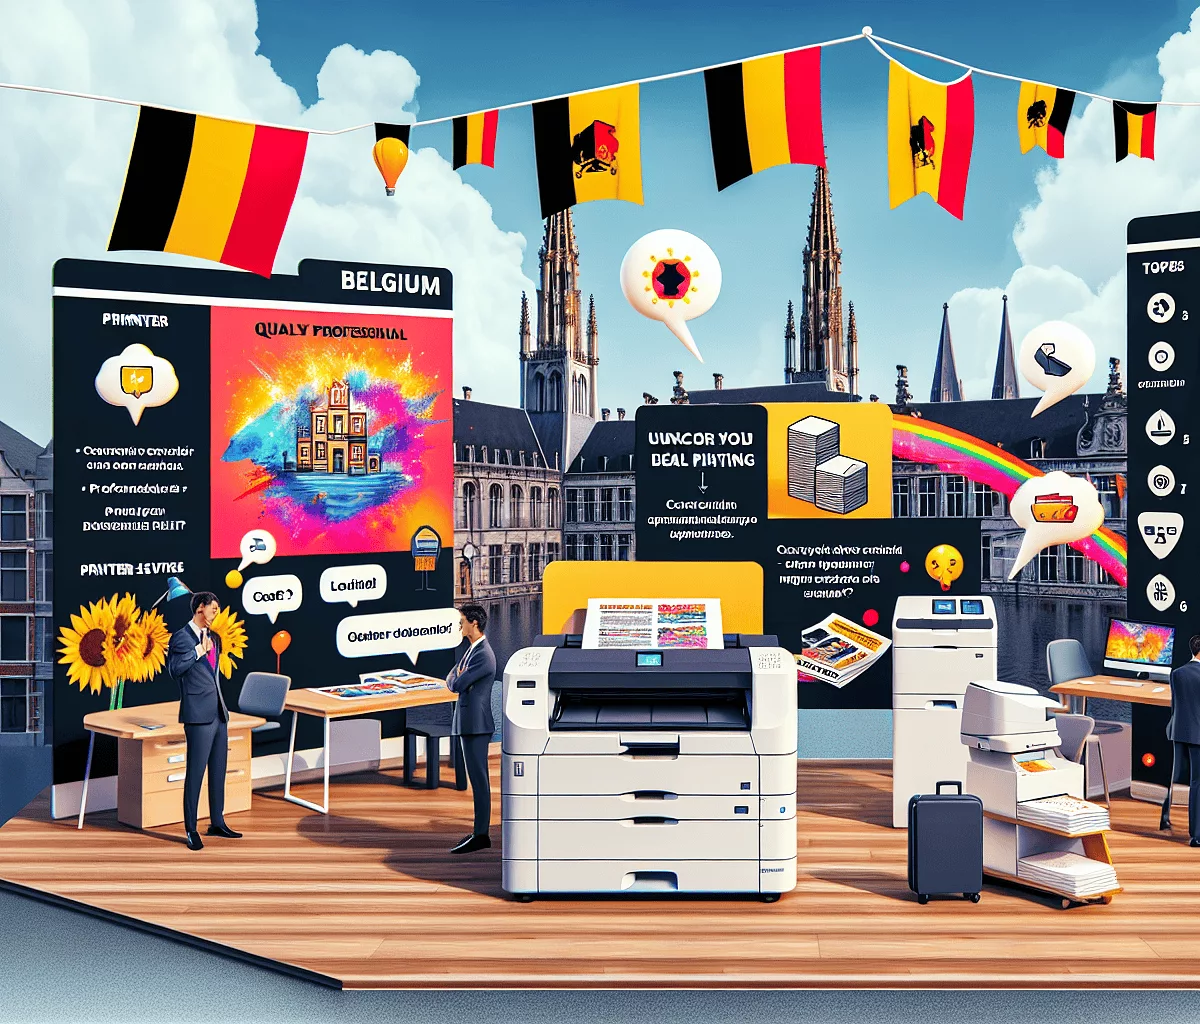 découvrez les critères de sélection d'un prestataire de location d'imprimante professionnelle en belgique et trouvez la solution idéale pour vos besoins d'impression professionnelle.